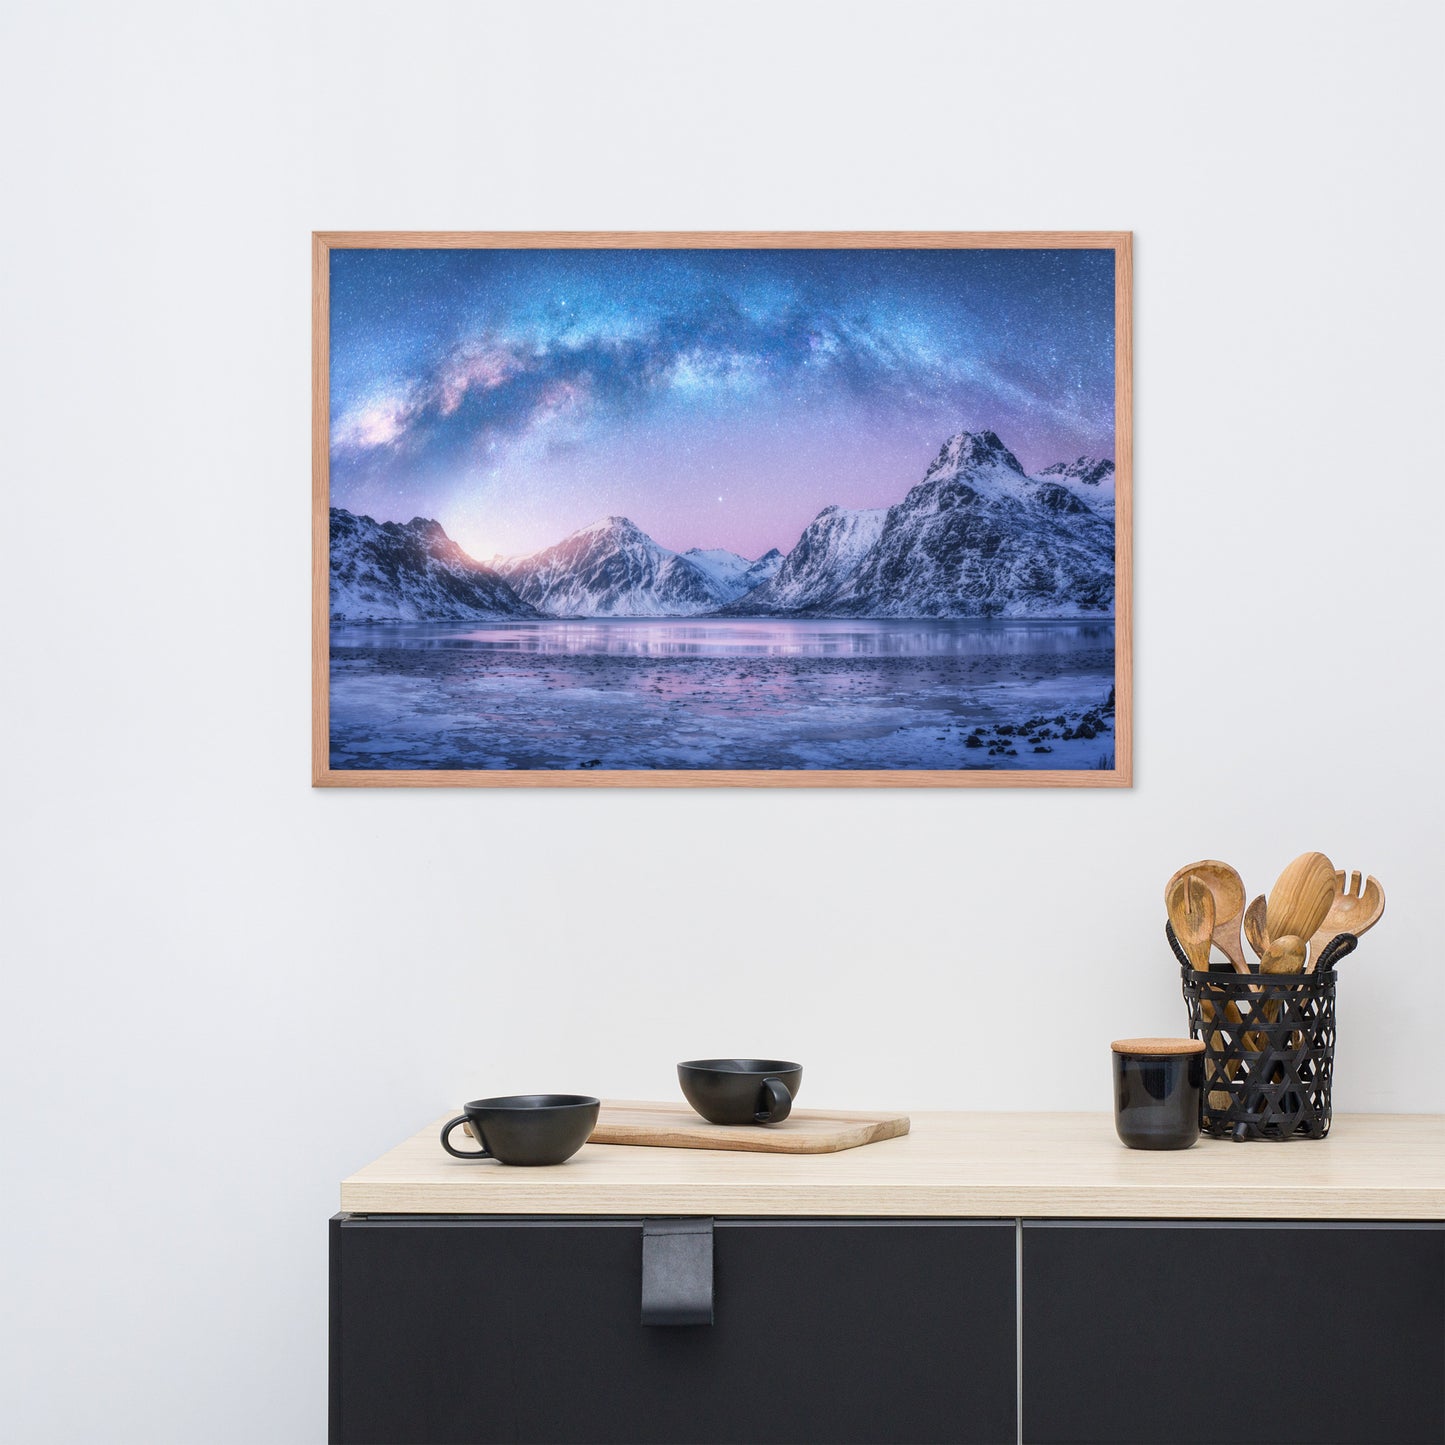 Milky Way Lofoten Islands, Norway Framed Wall Art Prints